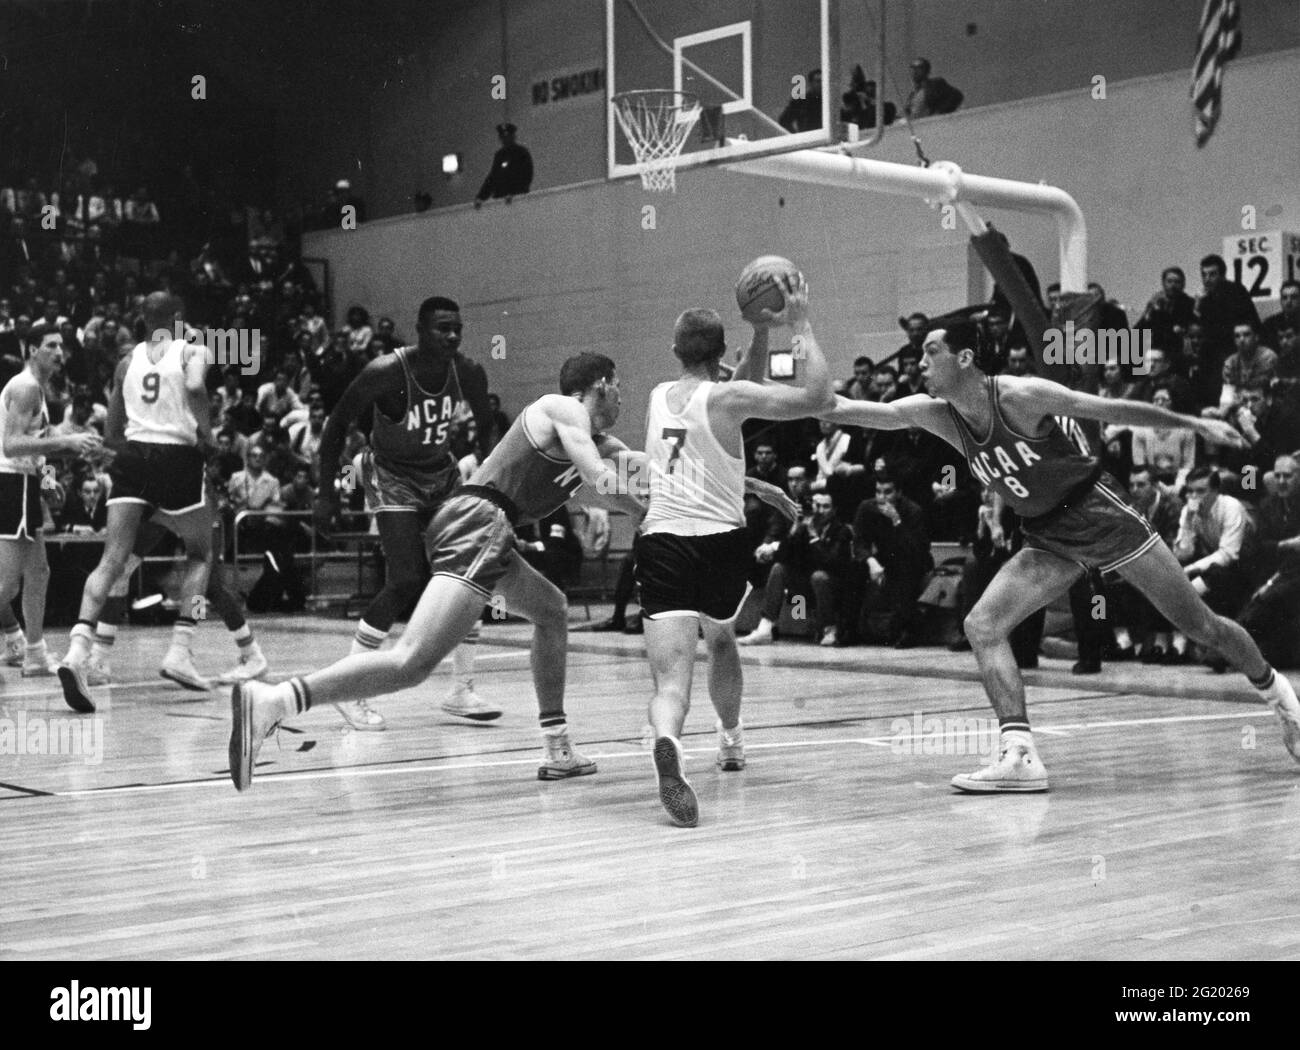 Bill Bradley de l'Université de Princeton (n° 8 pour l'équipe rouge de la NCAA), en action lors des acquisitions pour l'équipe de basket-ball olympique américaine 1964, New York, NY, avril 1964. (Photo de Riordan/United States information Agency/RBM Vintage Images) Banque D'Images